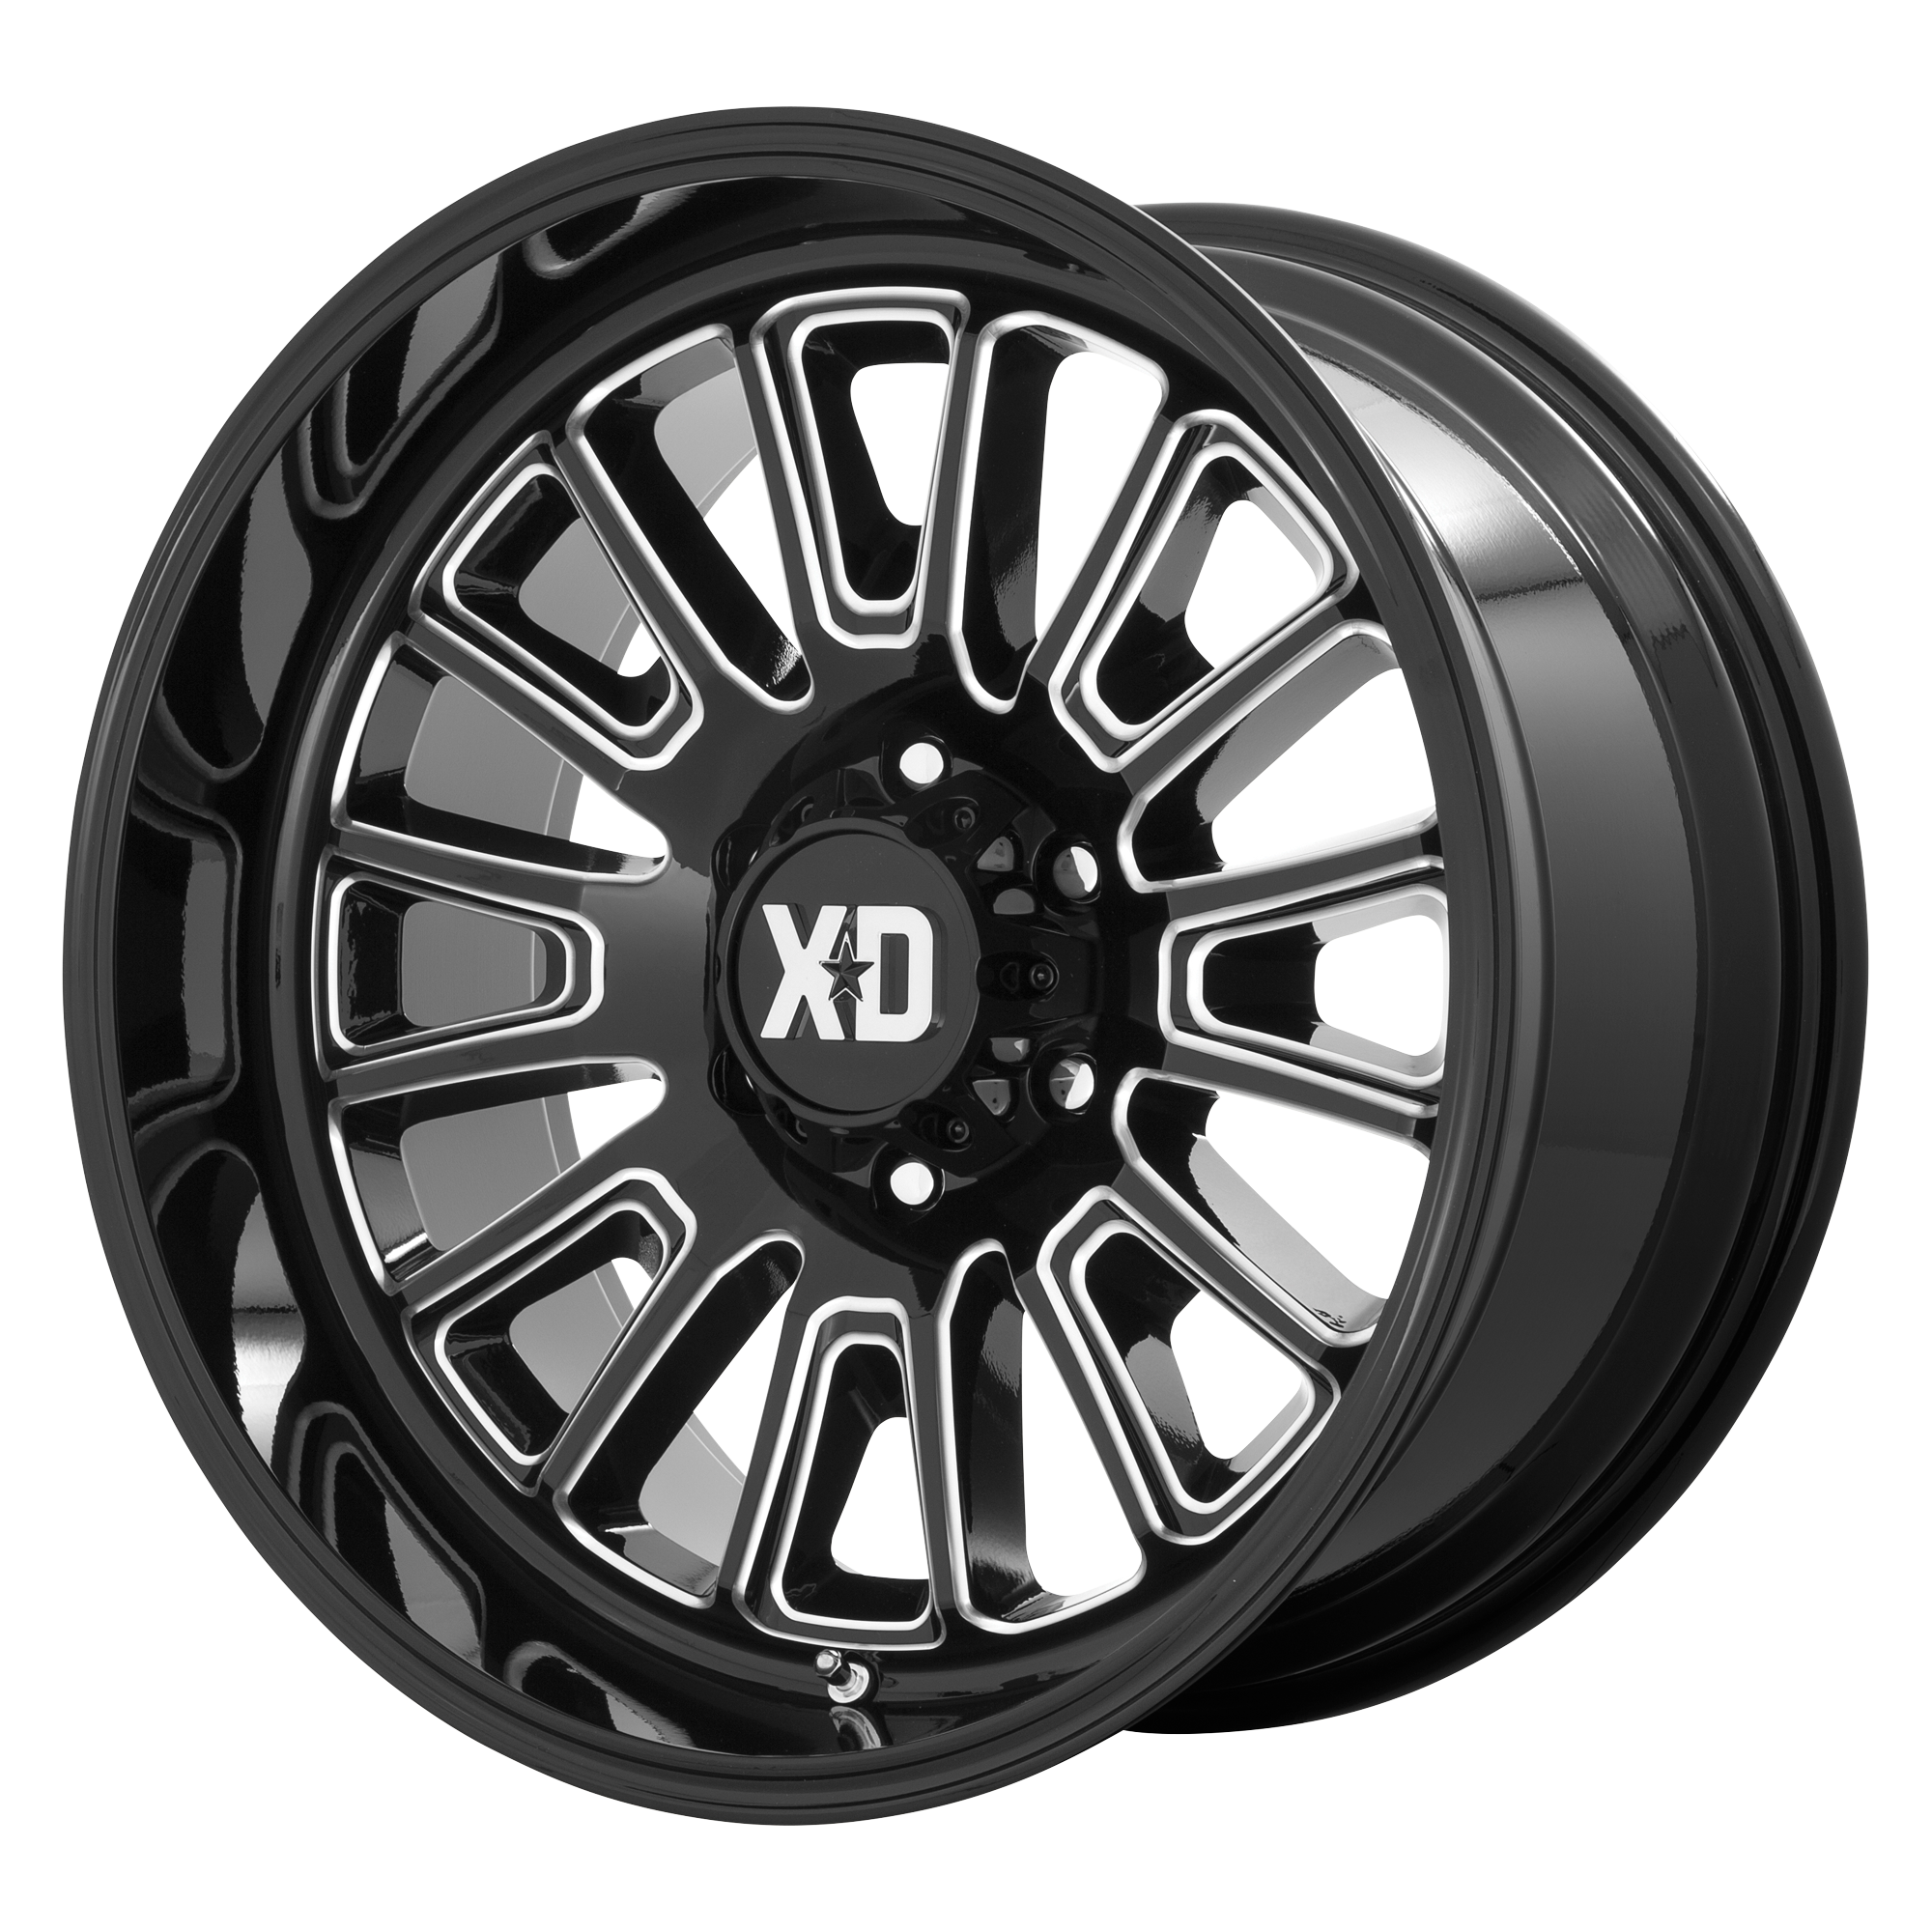 XD 22"x12" Non-Chrome Gloss Black Milled Custom Wheel ARSWCWXD86422280344N